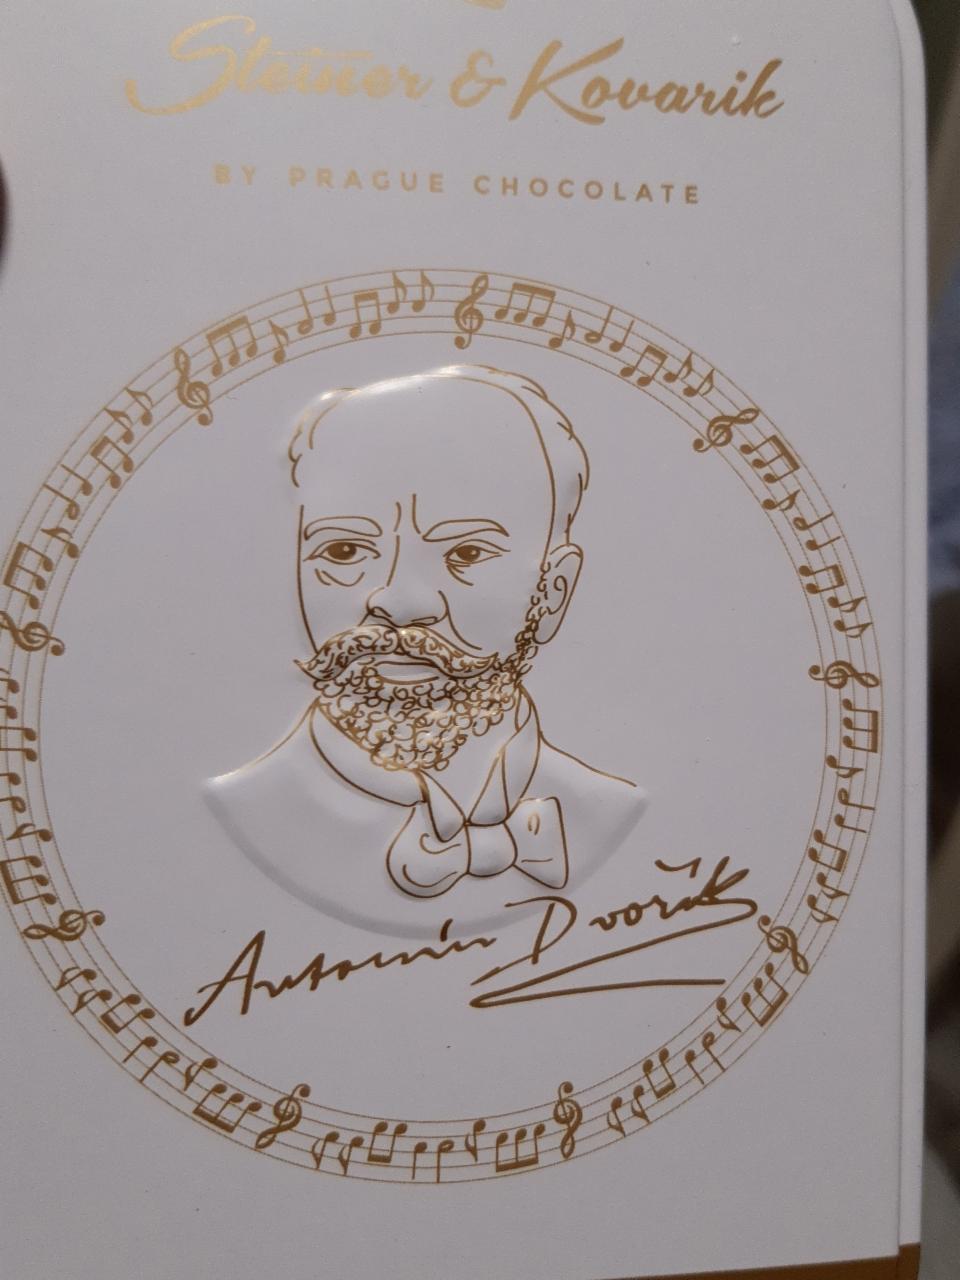 Fotografie - Dvořákovy mandle v mléčné čokoládě se zázvorem Steiner & Kovarik